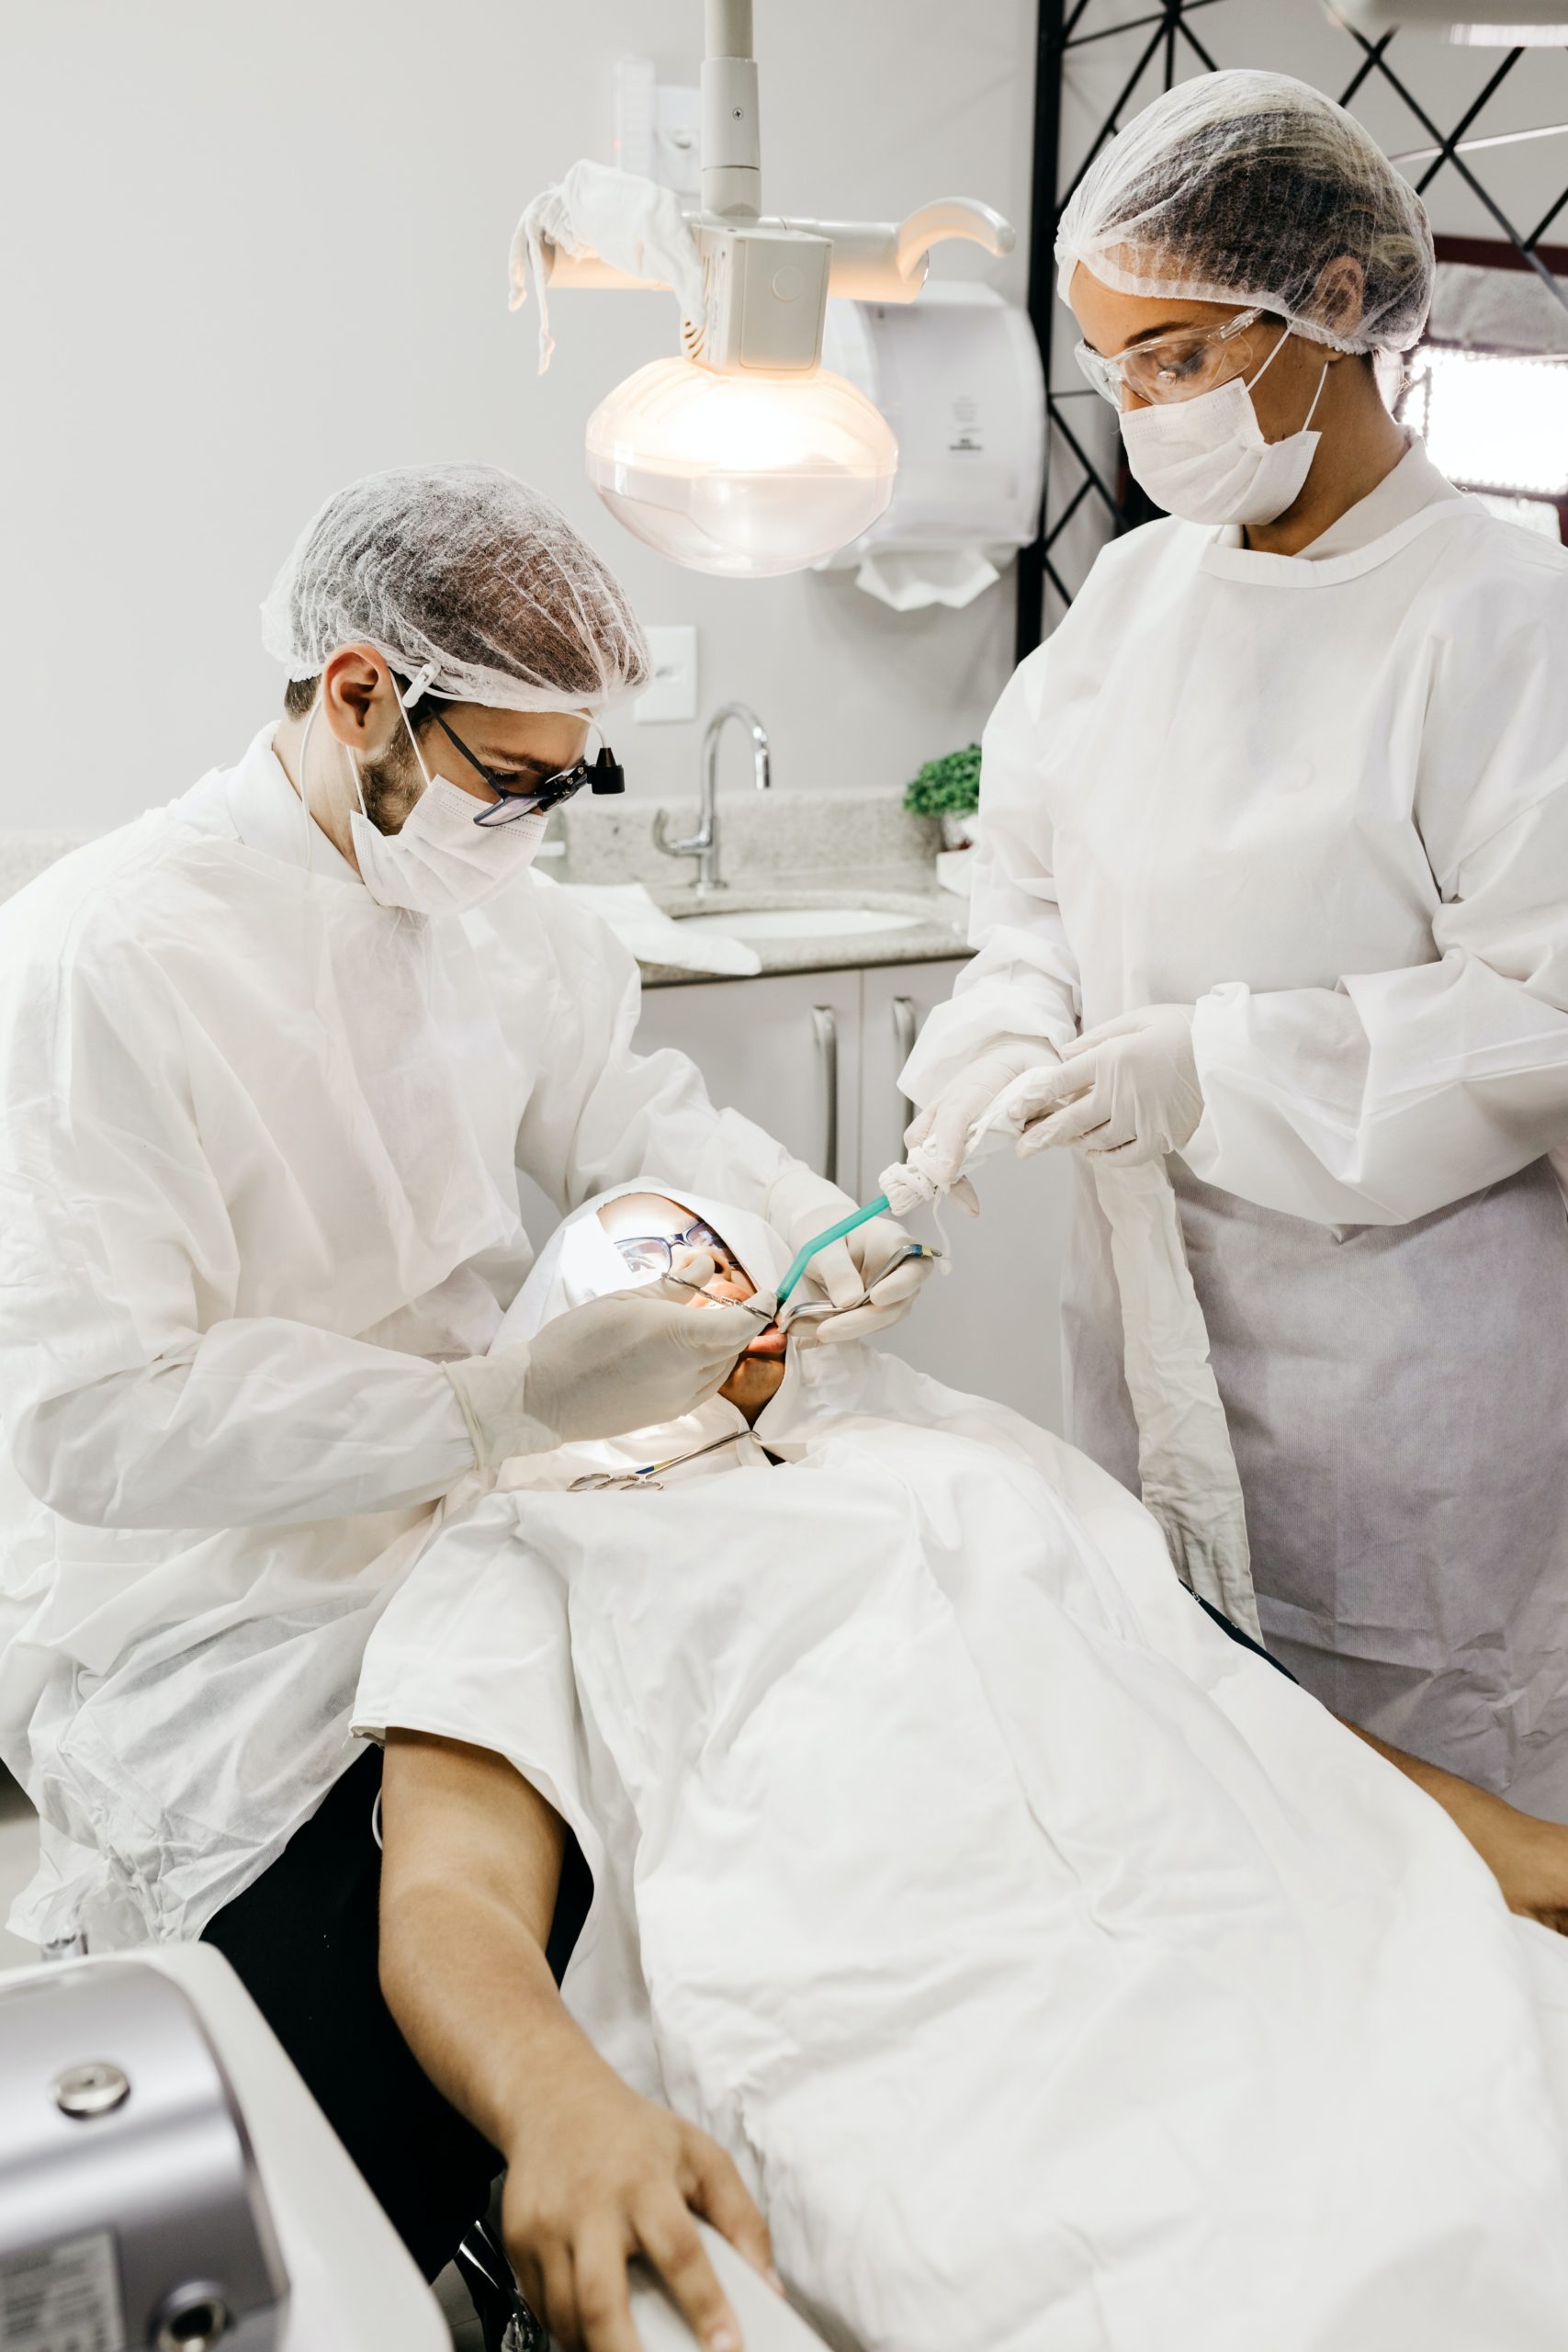 Dental bonding procedures